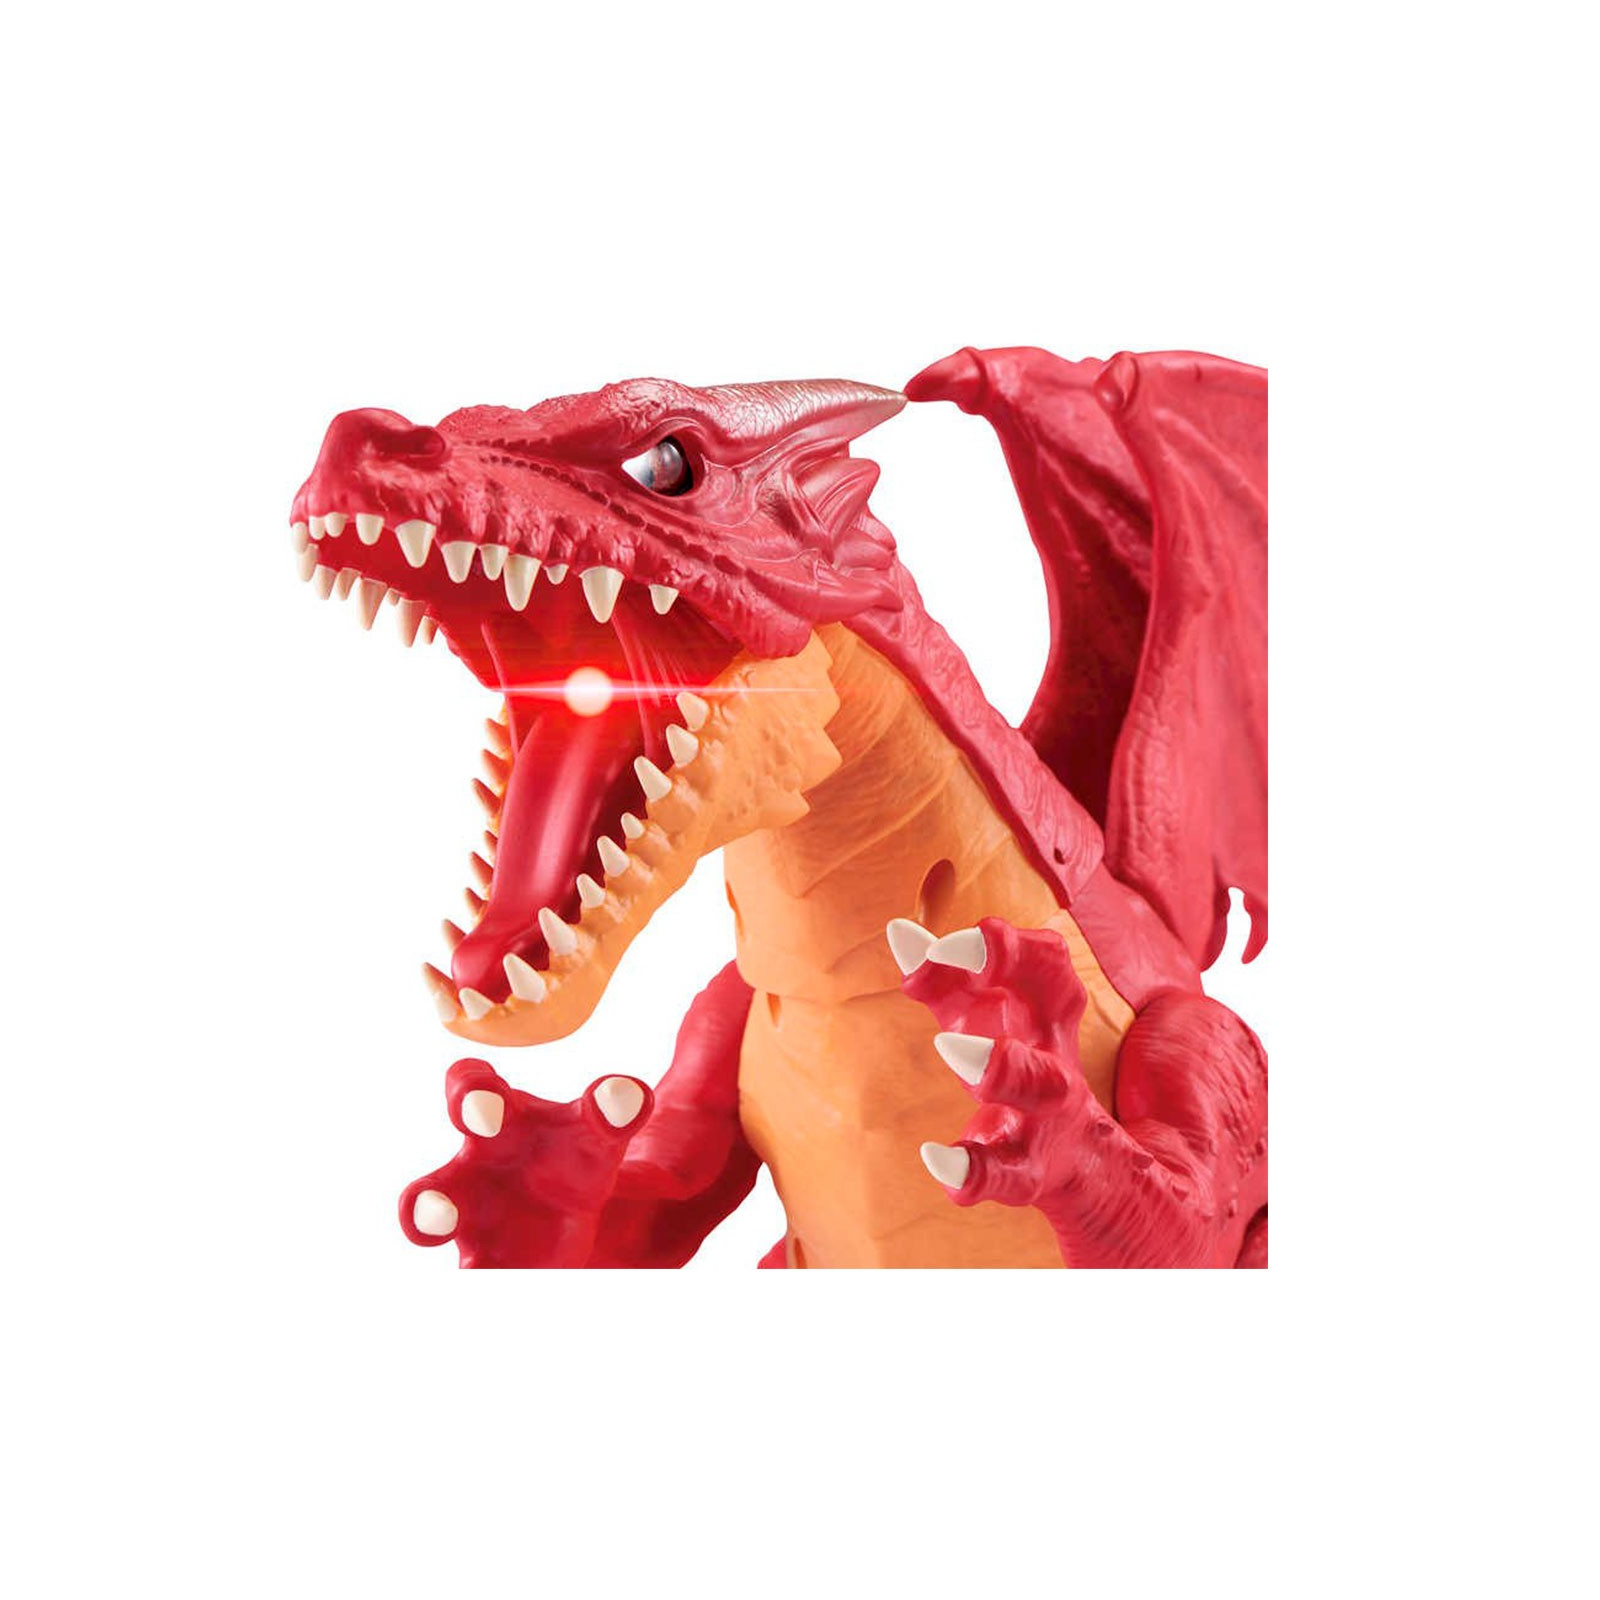 Интерактивная игрушка Pets & Robo Alive Robo Alive - Огненный дракон (7115R) изображение 5